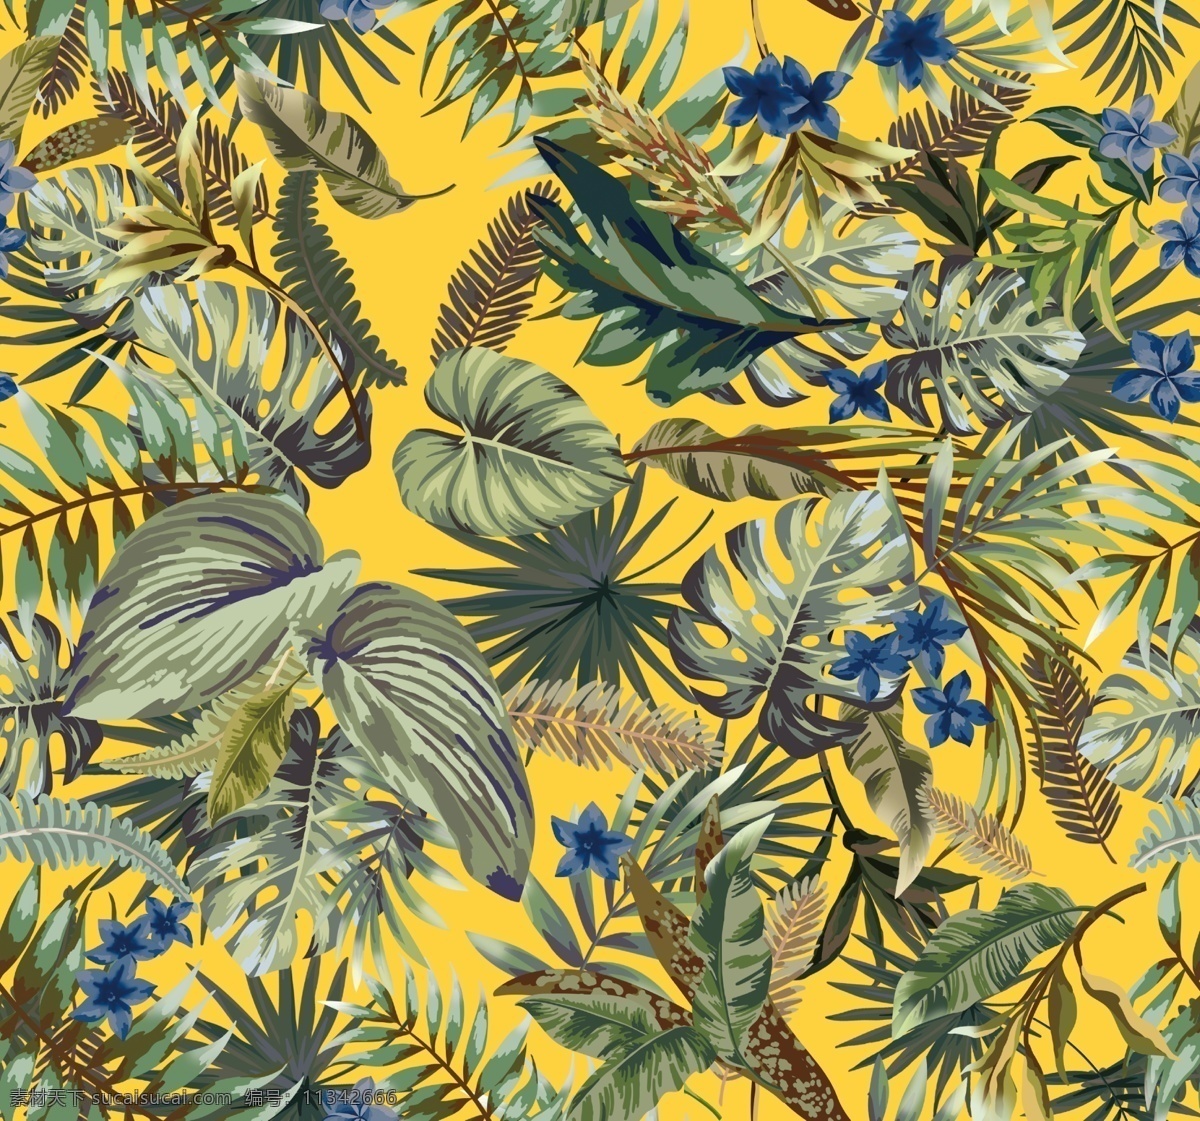 热带植物图片 大牌 印花 新款 潮流 2020 流行 爆款 数码 热带花 植物 叶子 棕榈叶 针叶 手绘 女装